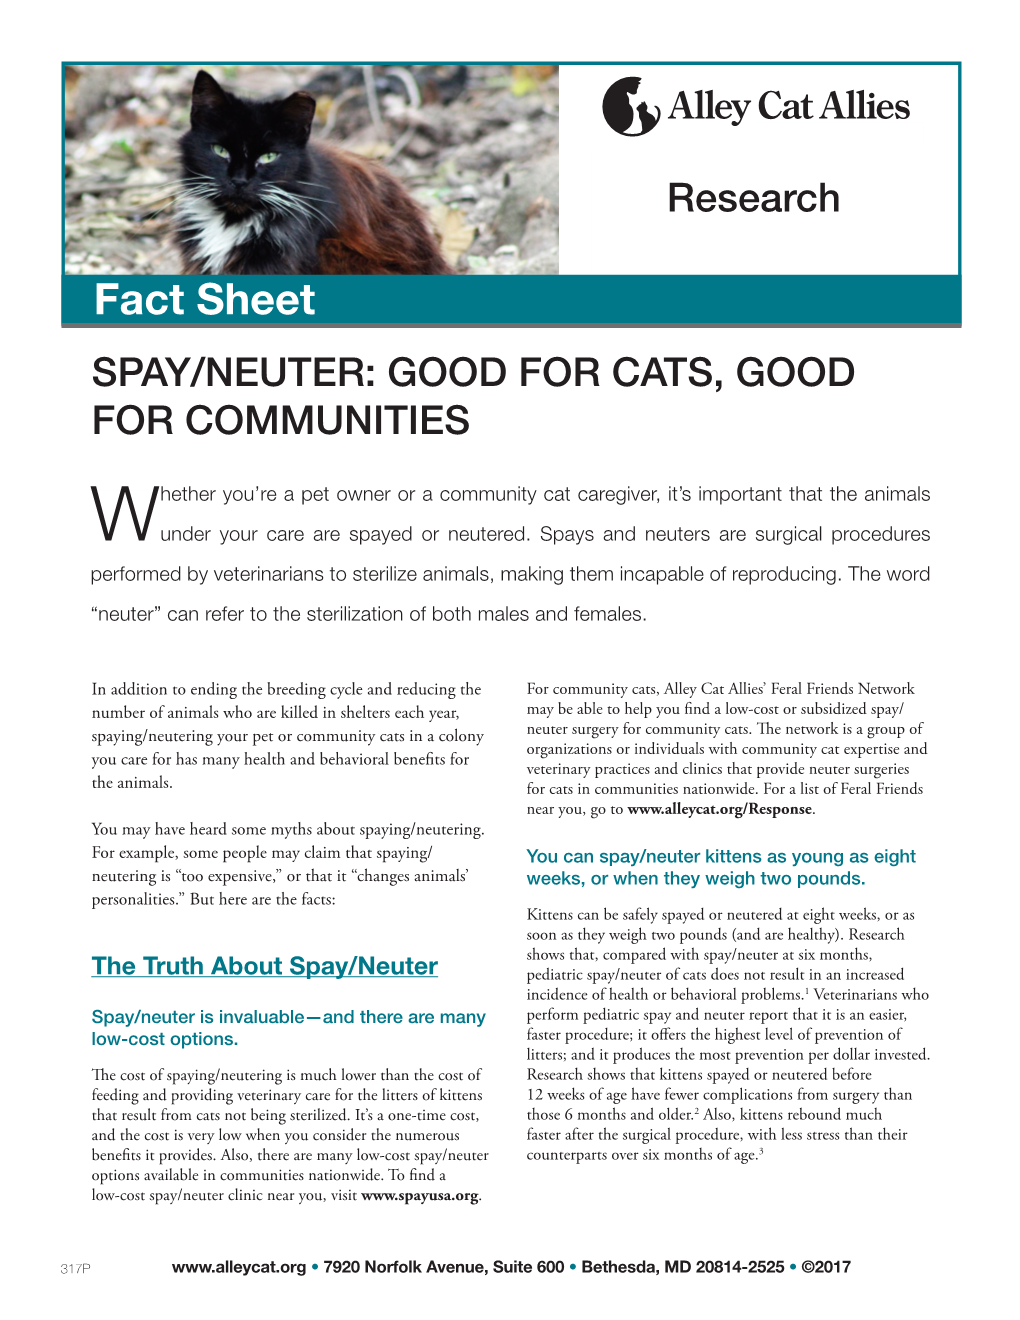 Fact Sheet SPAY/NEUTER: GOOD for CATS, GOOD for COMMUNITIES